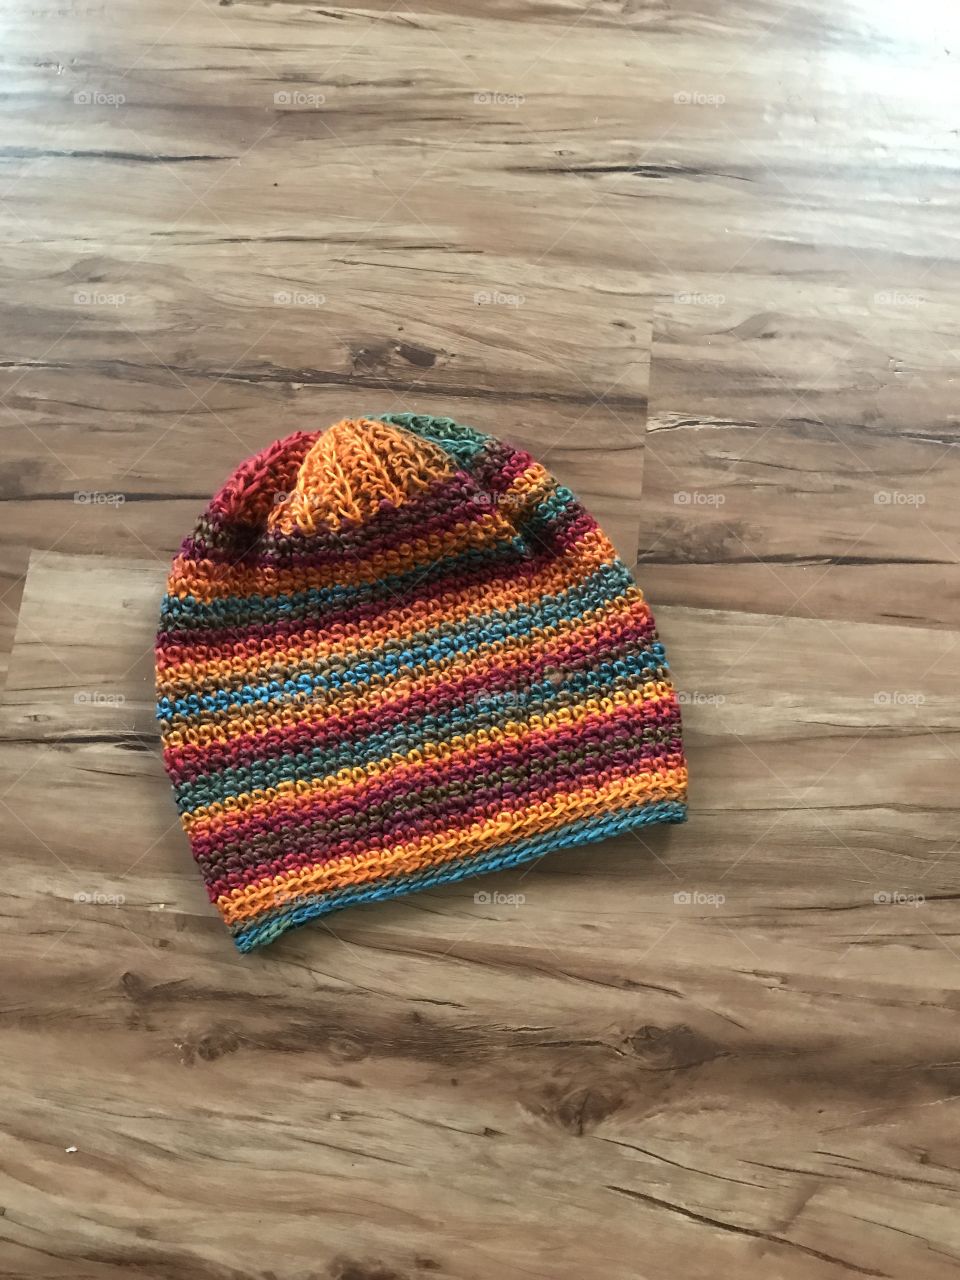 Crochet slouch hat